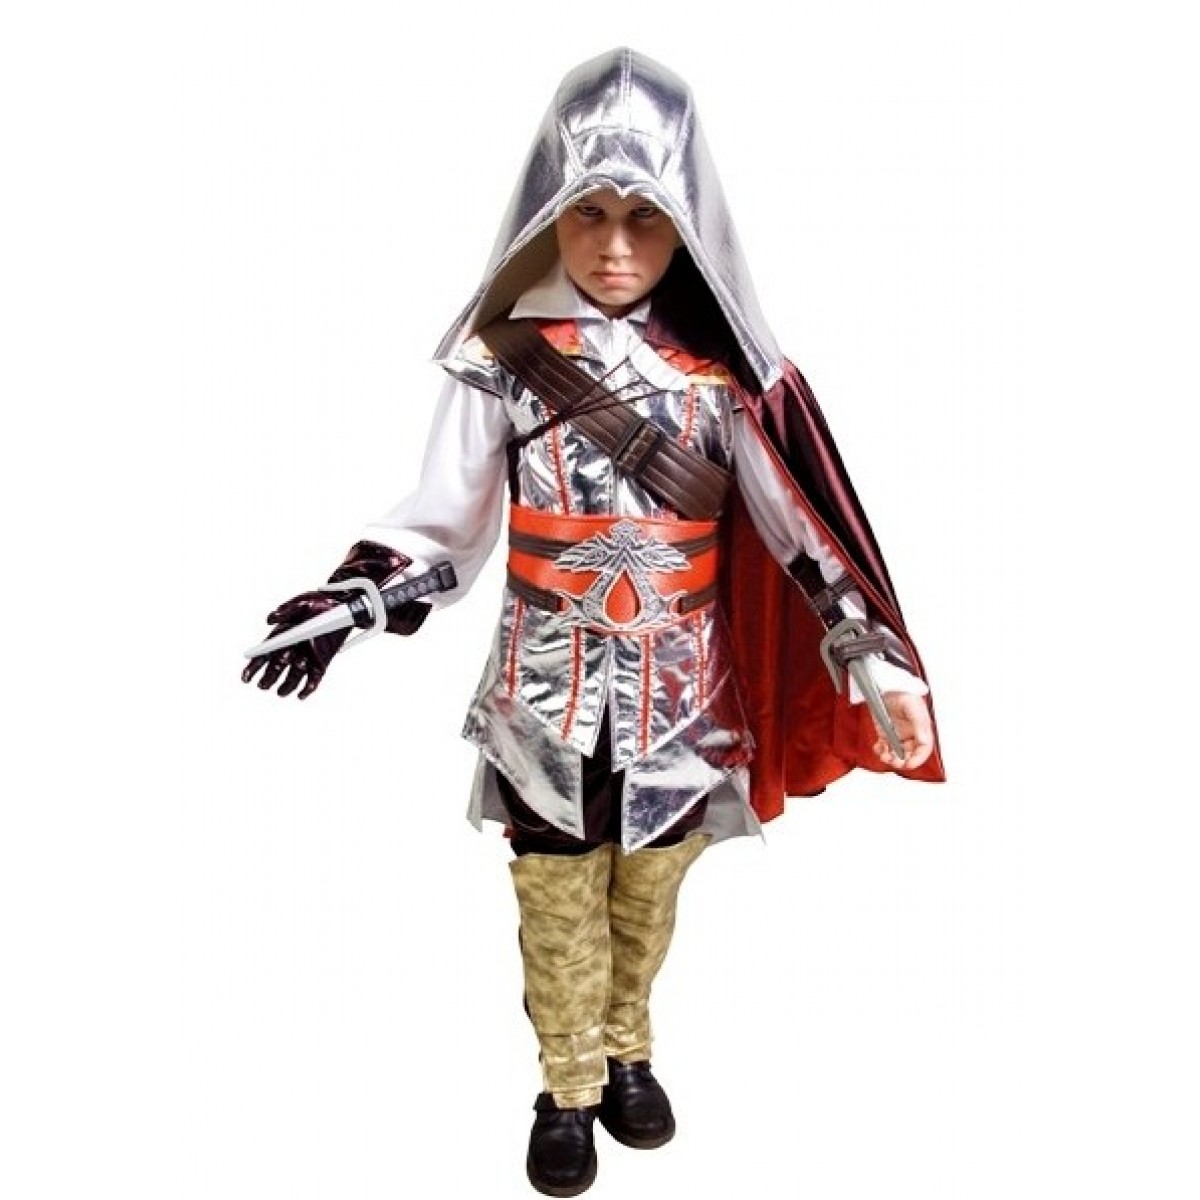 Костюм Ассасина, карнавальный костюм Воин-Ассасин, Assassin's Creed артикул MK11-003, Metrokids на возраст 5-15 лет, рост  122-128, 134-140, 144-152, 155-164